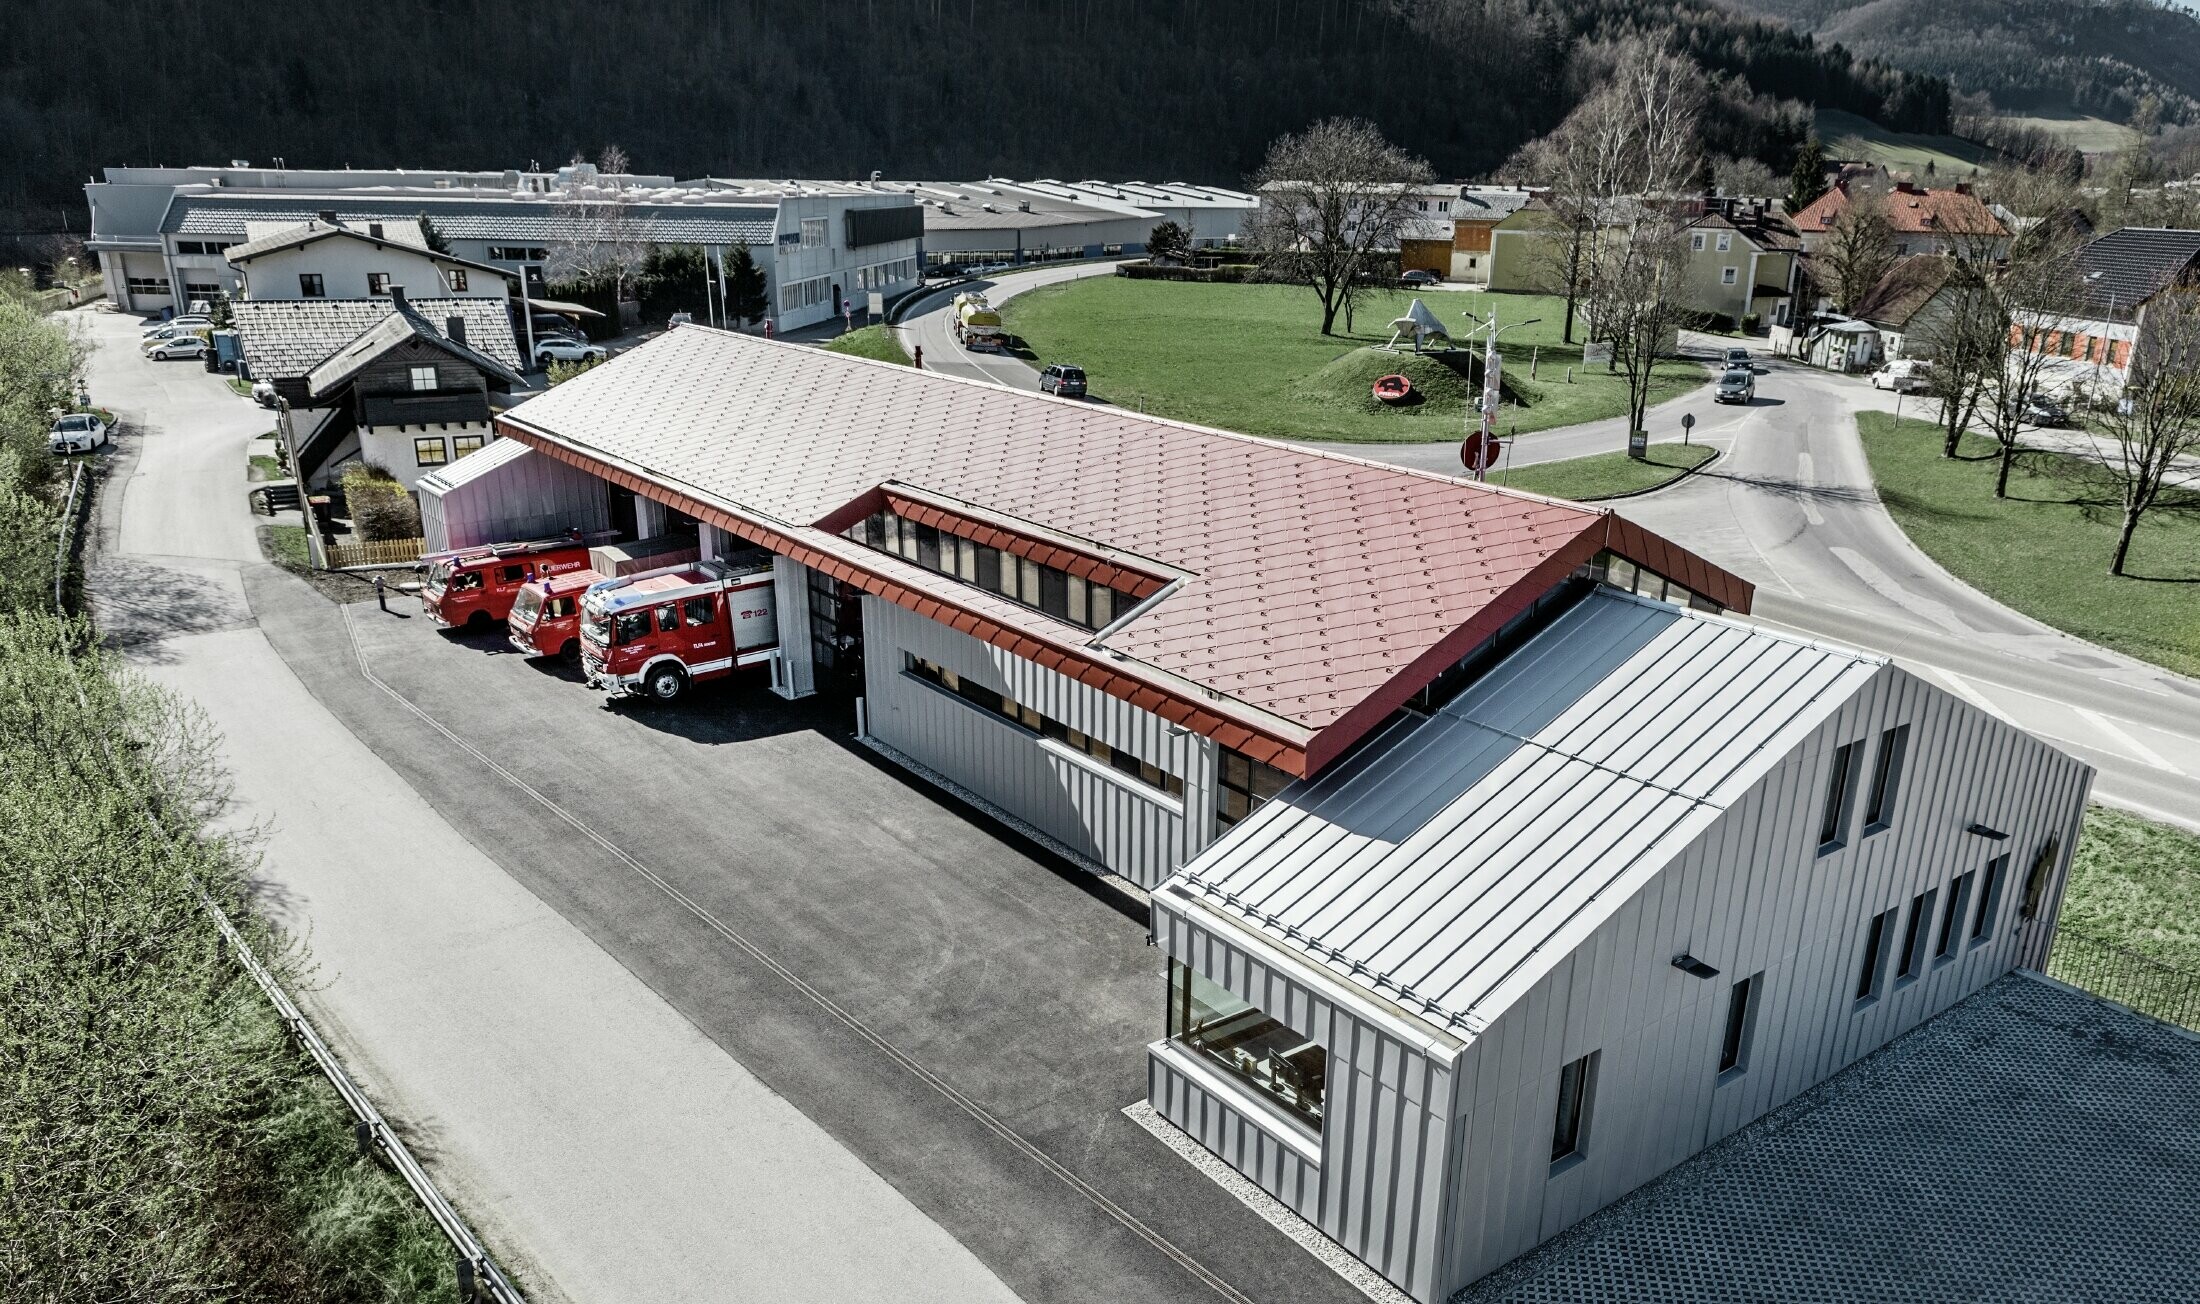 Vue aérienne de la caserne de sapeurs pompiers de l’entreprise à Marktl/Lilienfeld. La toiture et la façade de la partie gauche du bâtiment ont été entièrement habillées avec la tuile 44 couleur rouge oxyde. La partie droite est recouverte d’une enveloppe en aluminium réalisée avec Prefalz couleur argent métallisé.